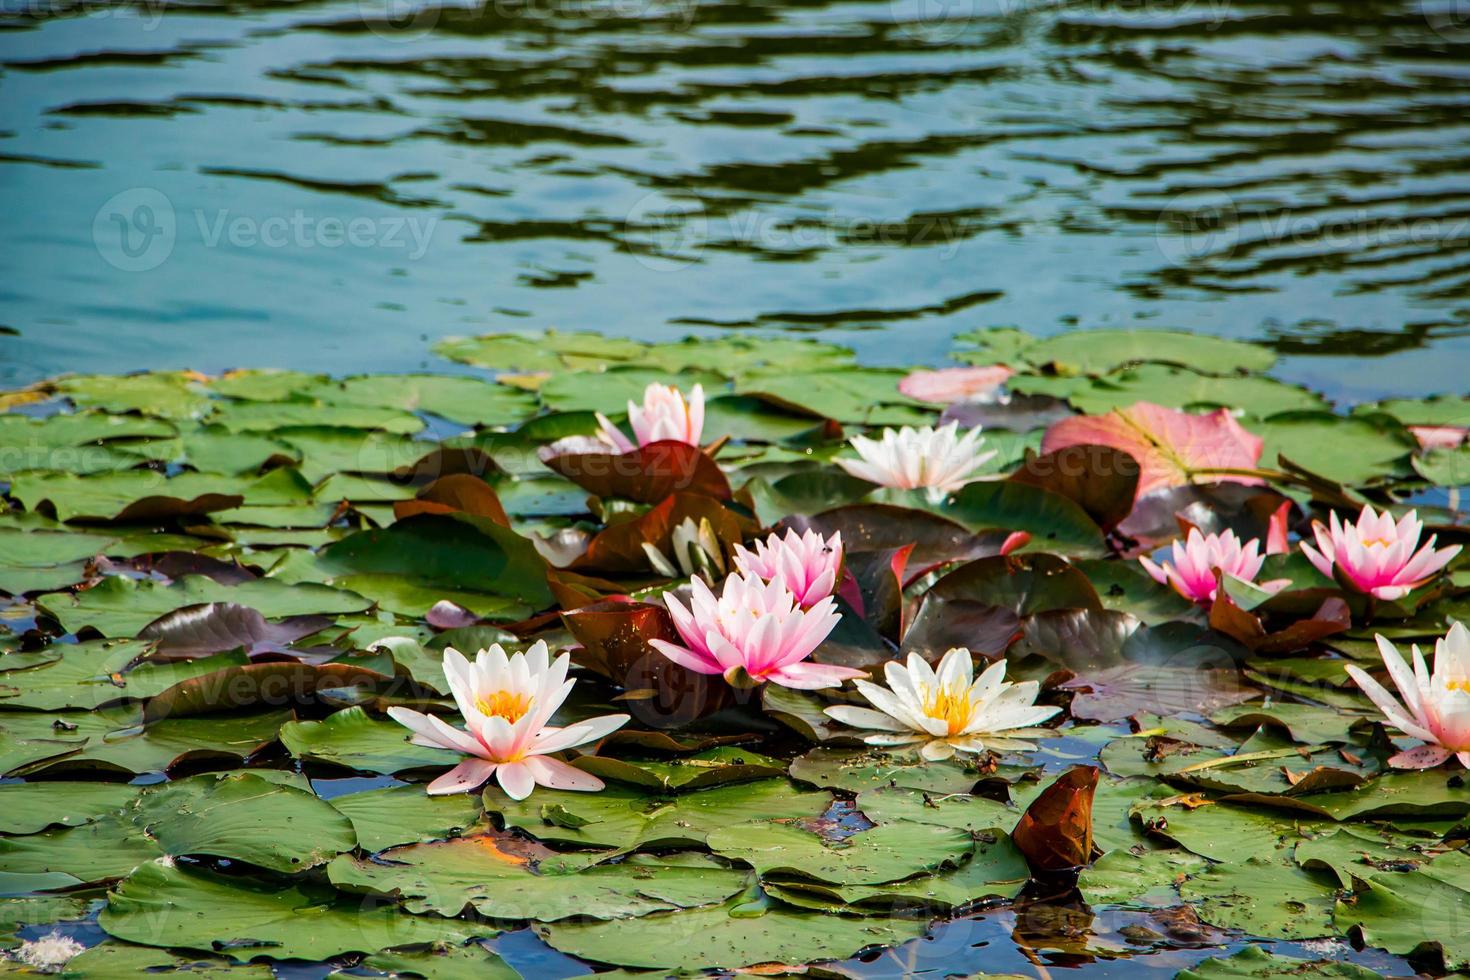 loti rosa in acqua limpida. belle ninfee nello stagno. fiore asiatico - un simbolo di relax. foto